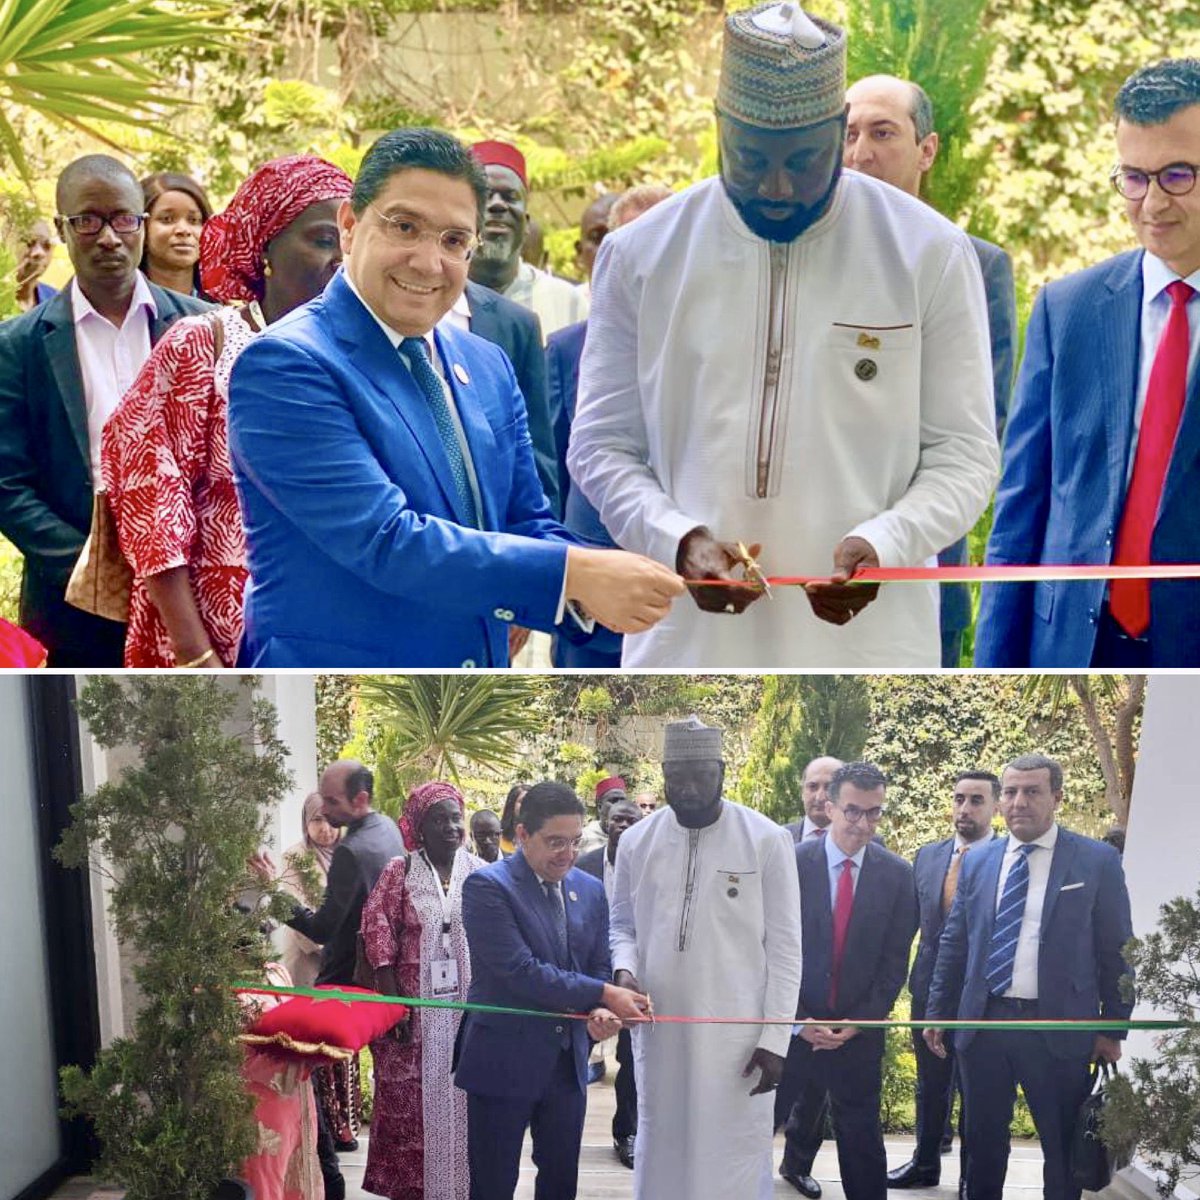 #Banjul 03mai2024
inauguration ce vendredi à Banjul de l’#Ambassade du Royaume du #Maroc, par le Ministre #Bourita et le ministre gambien des Affaires Etrangères, de la Coopération Internationale et des Gambiens à l’Etranger, M. Mamadou #Tangara.